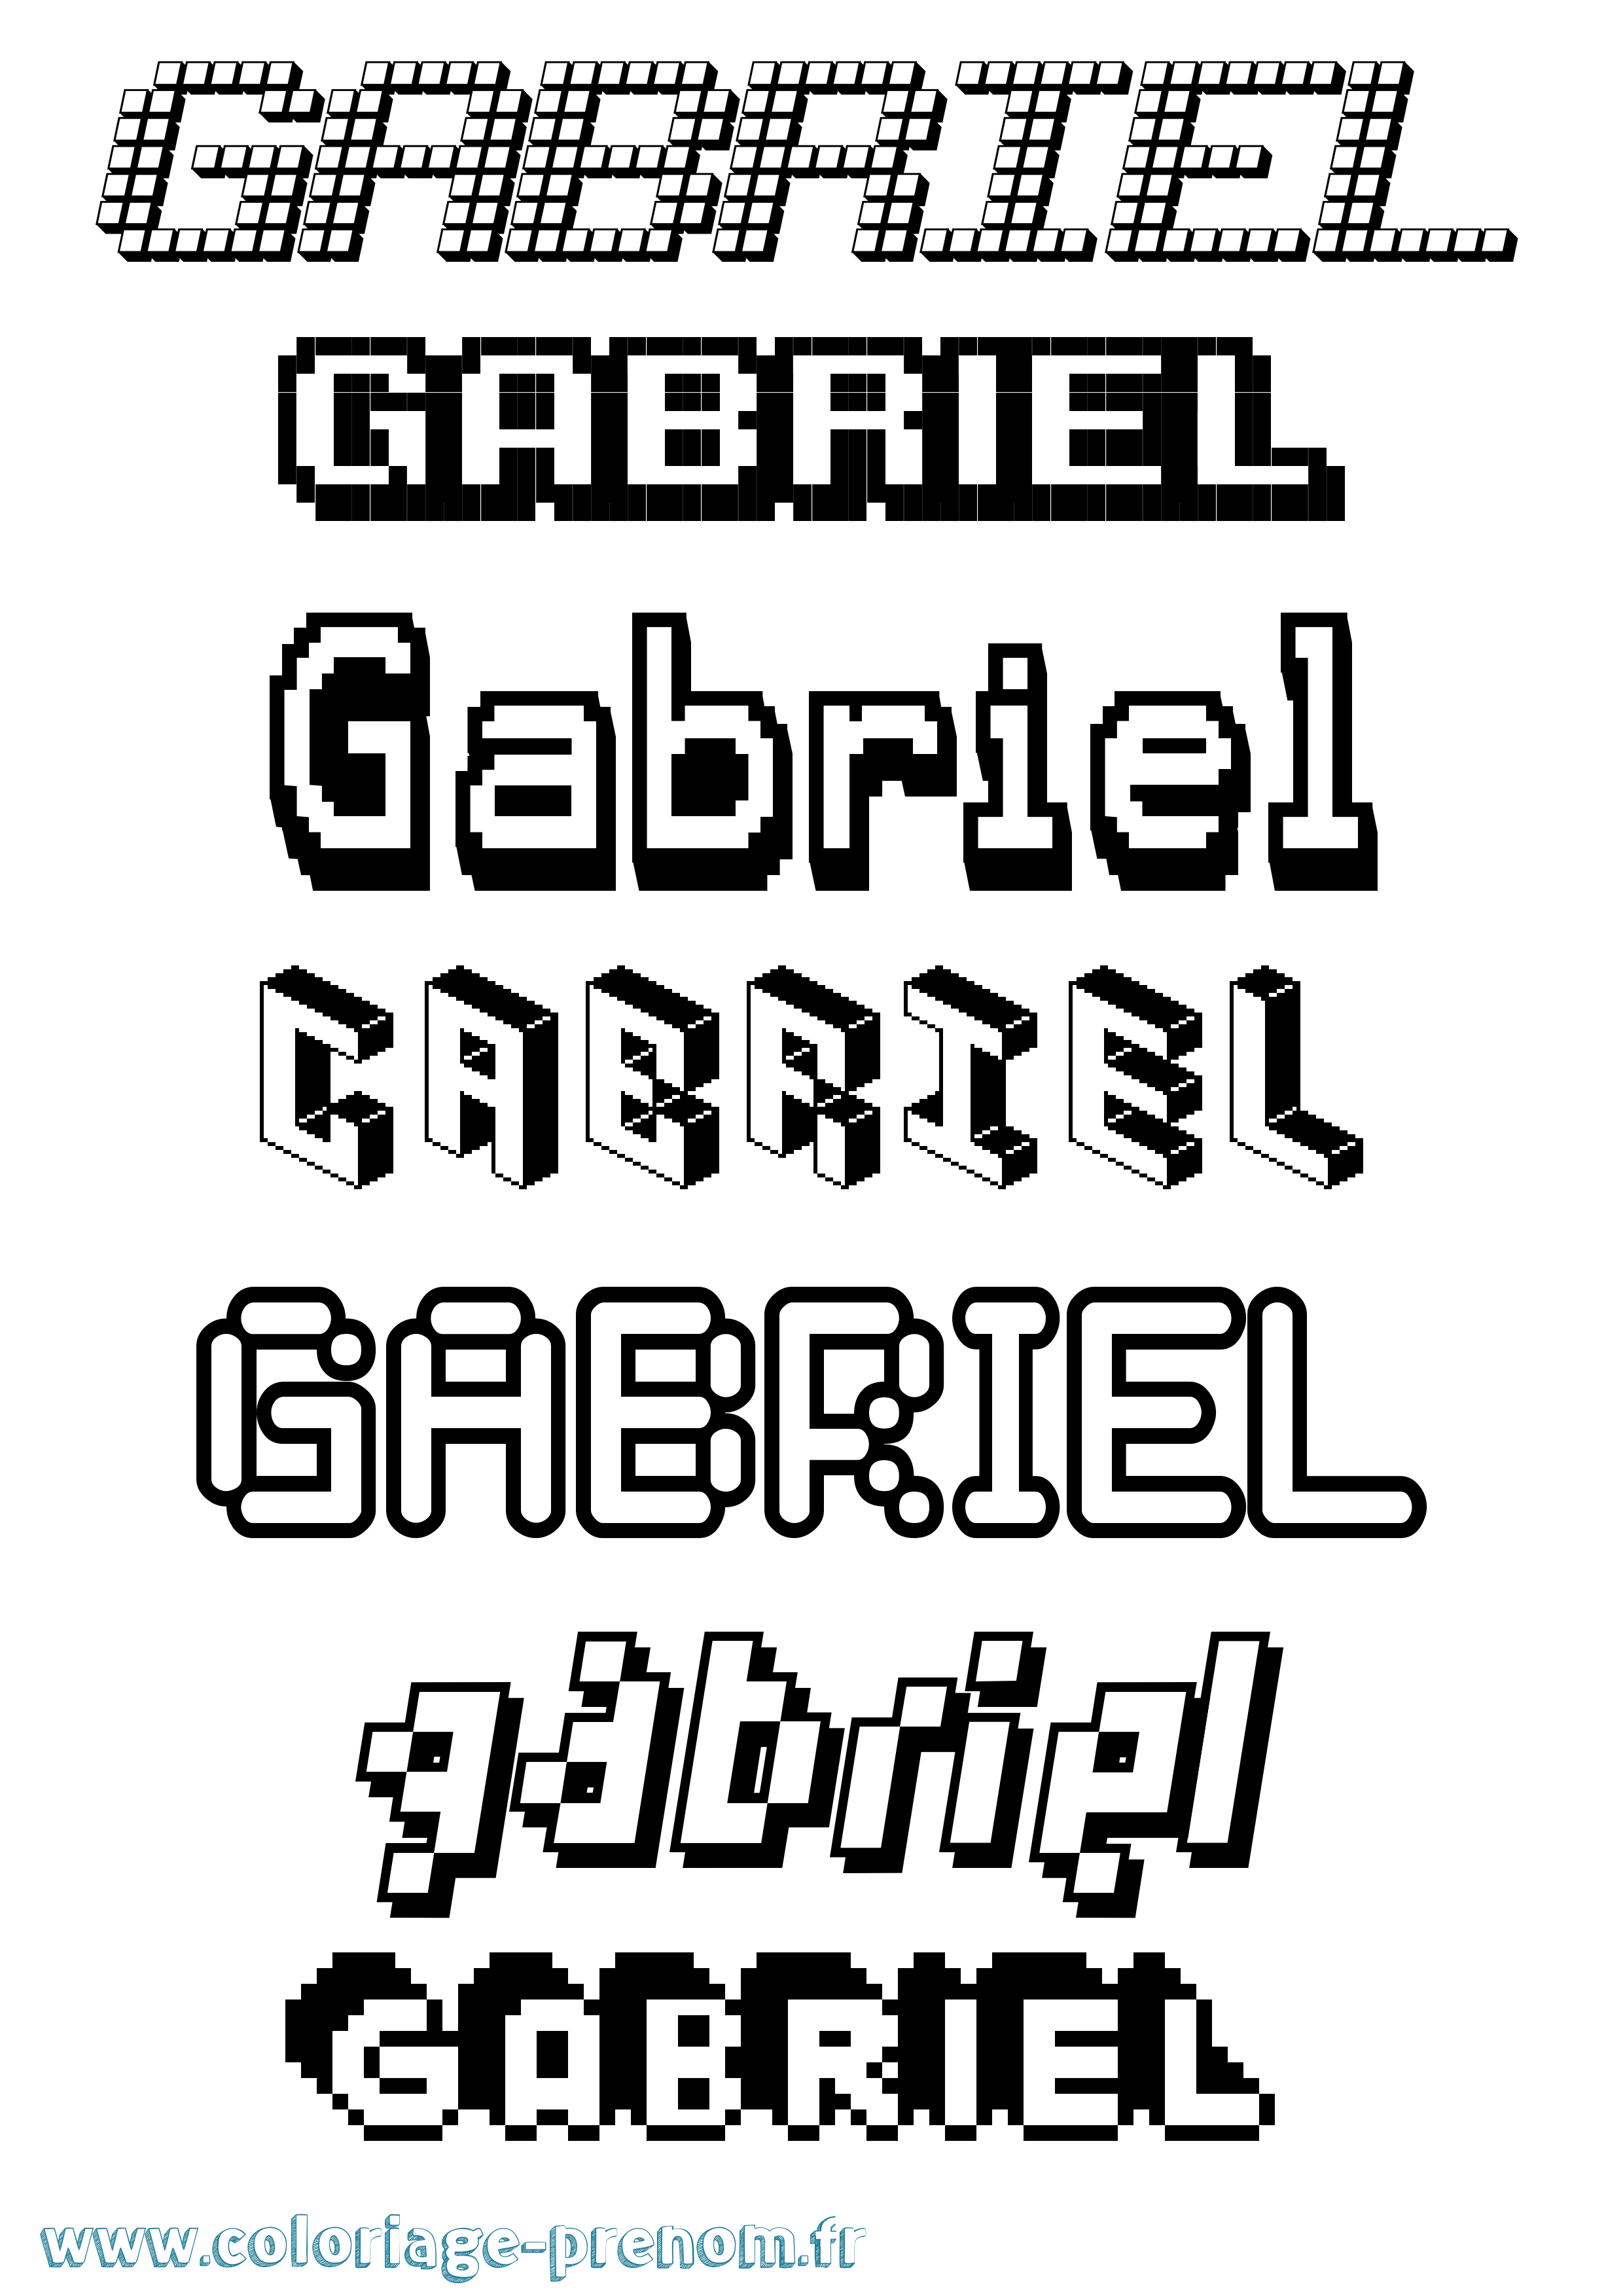 Coloriage prénom Gabriel Pixel